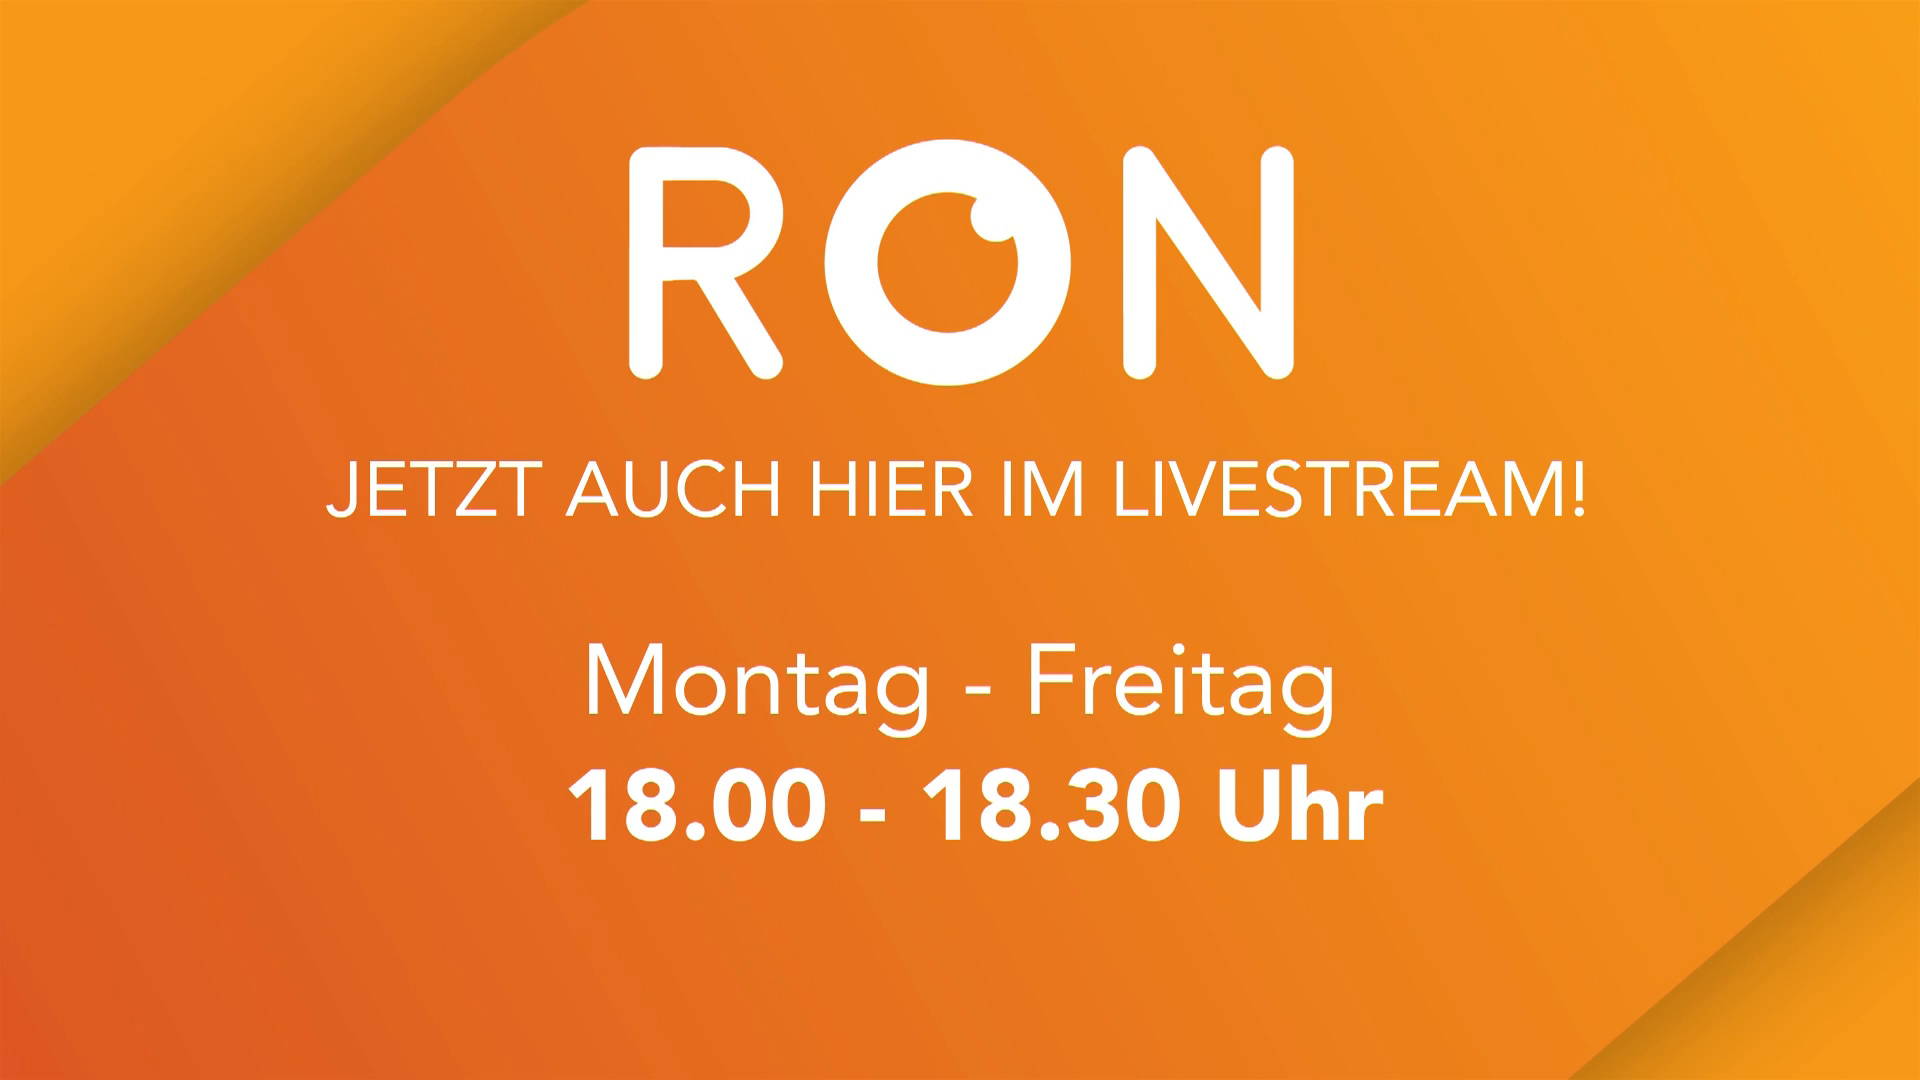 Watch RON TV